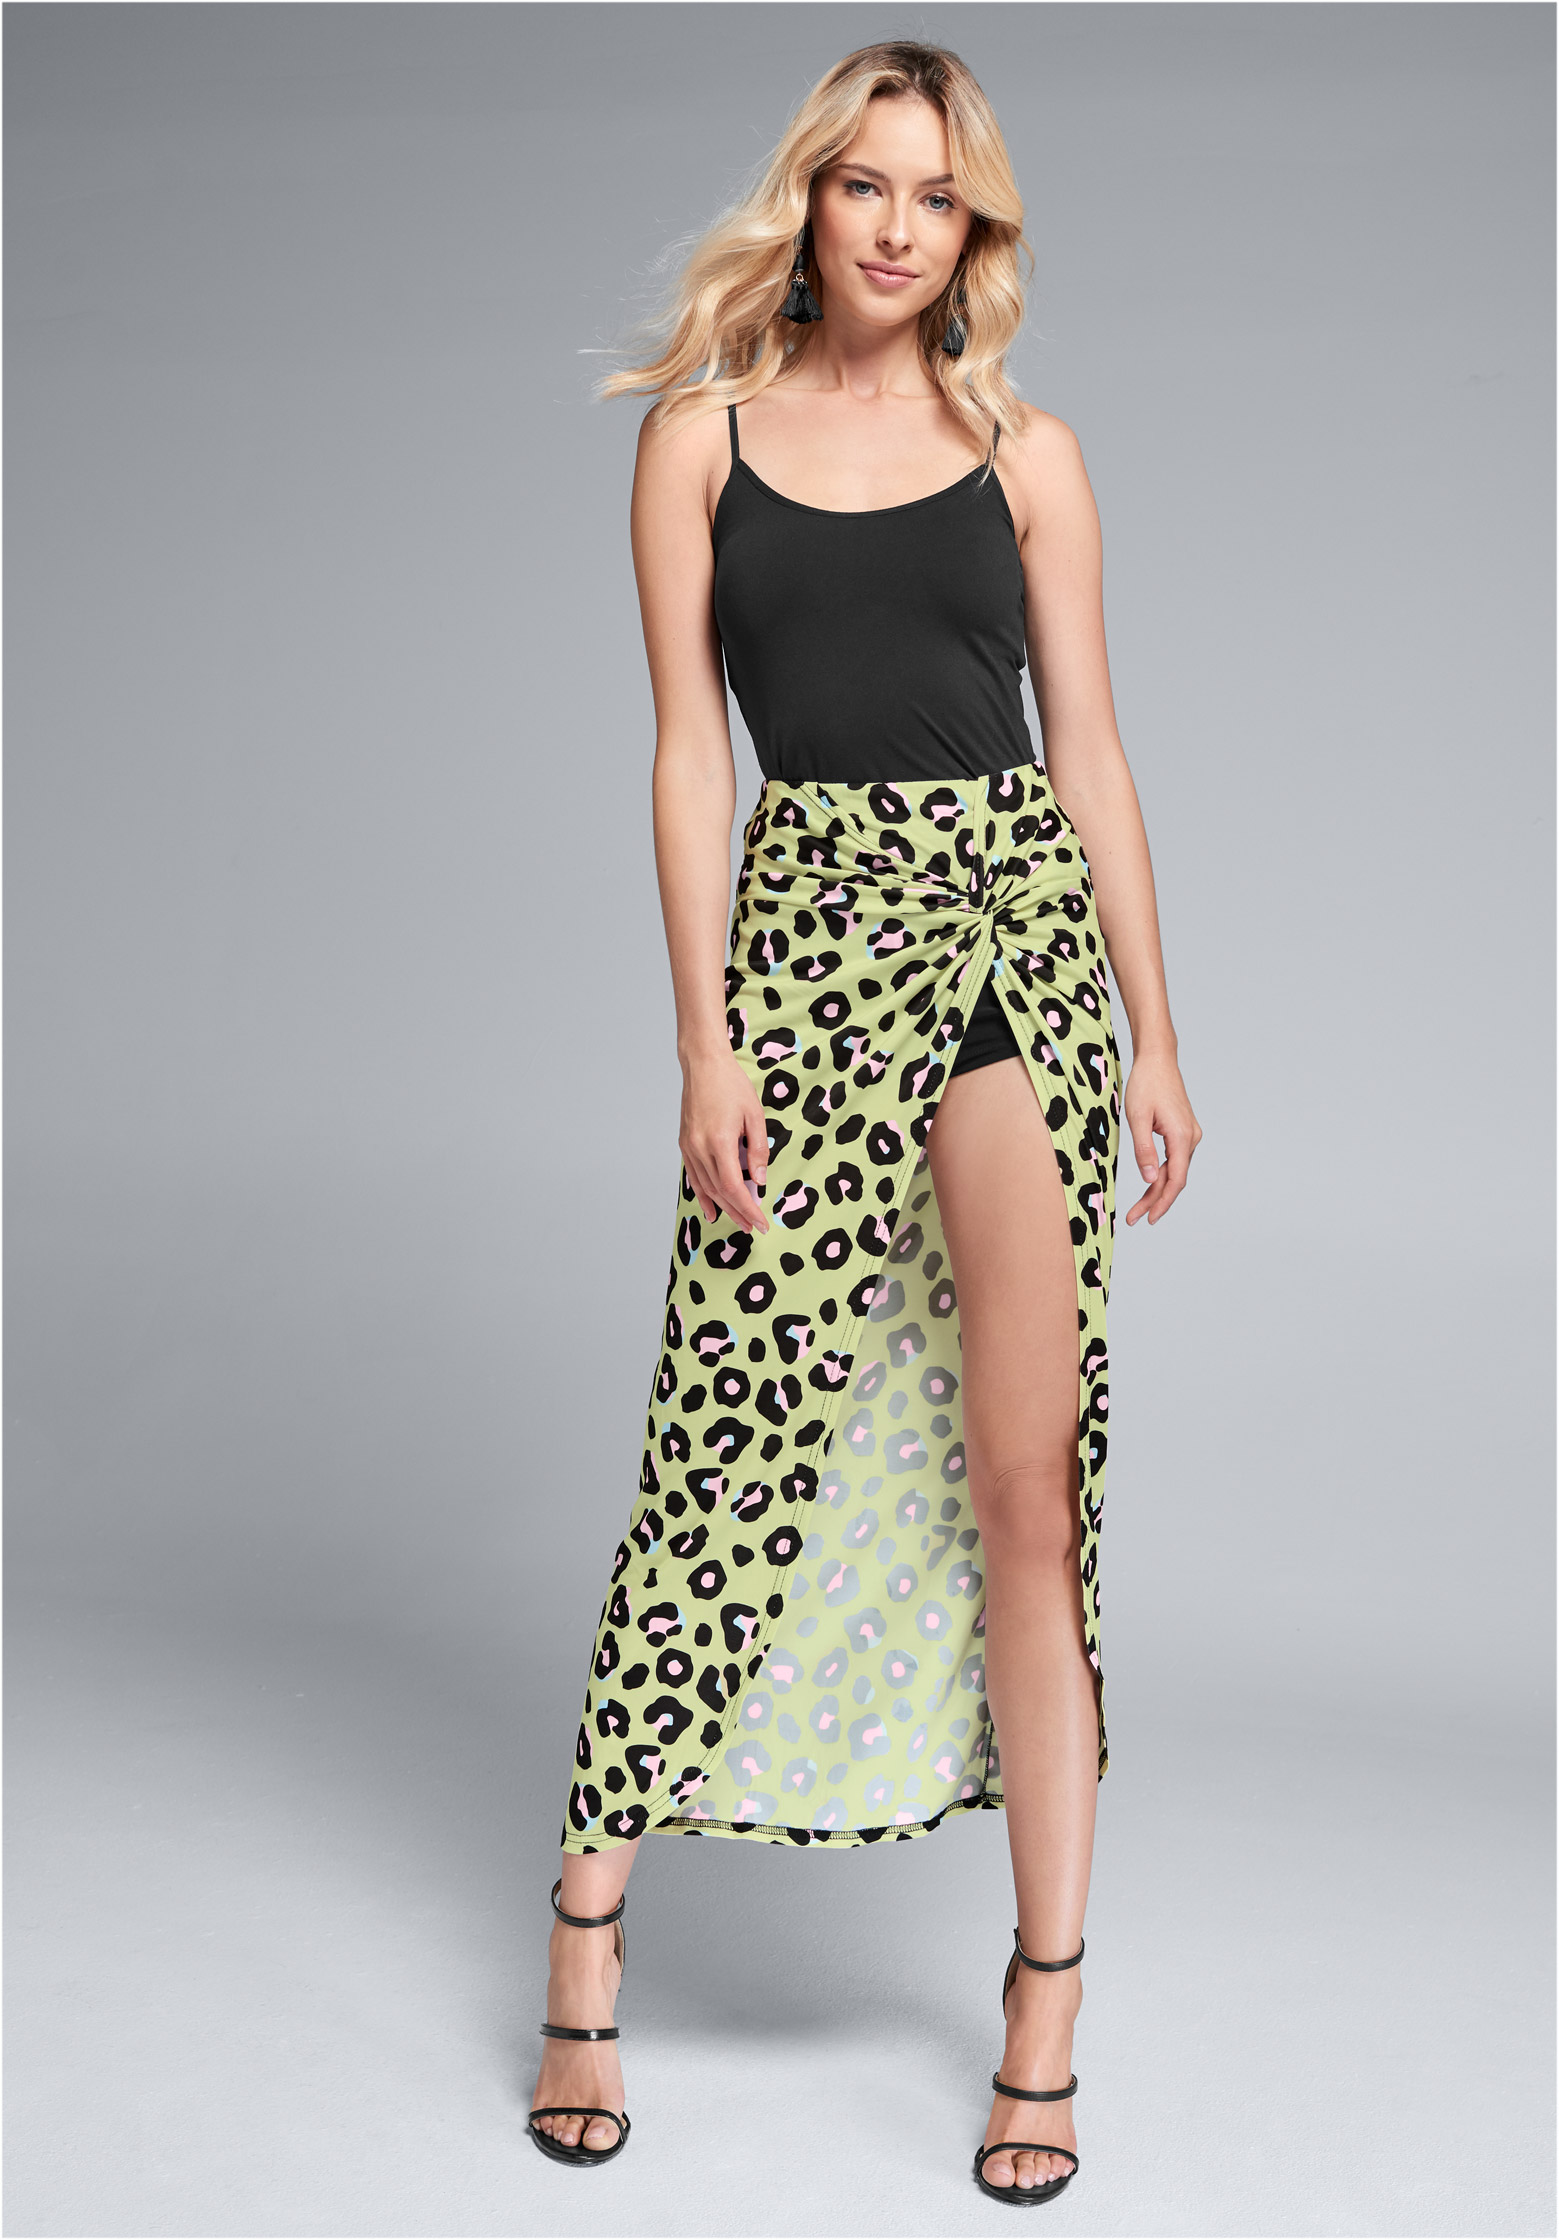 tight leopard print skirt